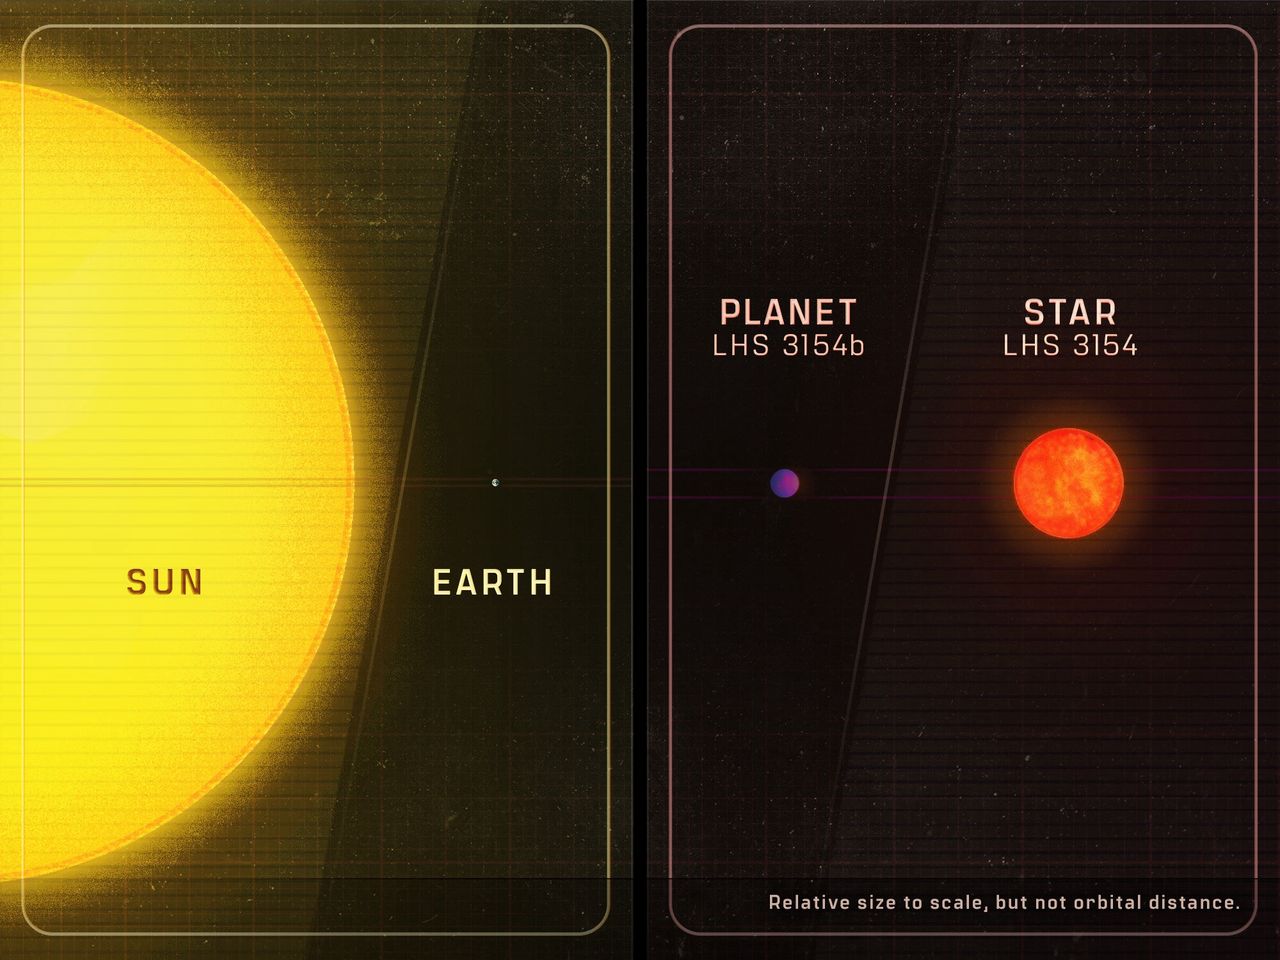 Artystyczne porównanie stosunku mas Ziemi i Słońca oraz LHS 3154 i jej planety